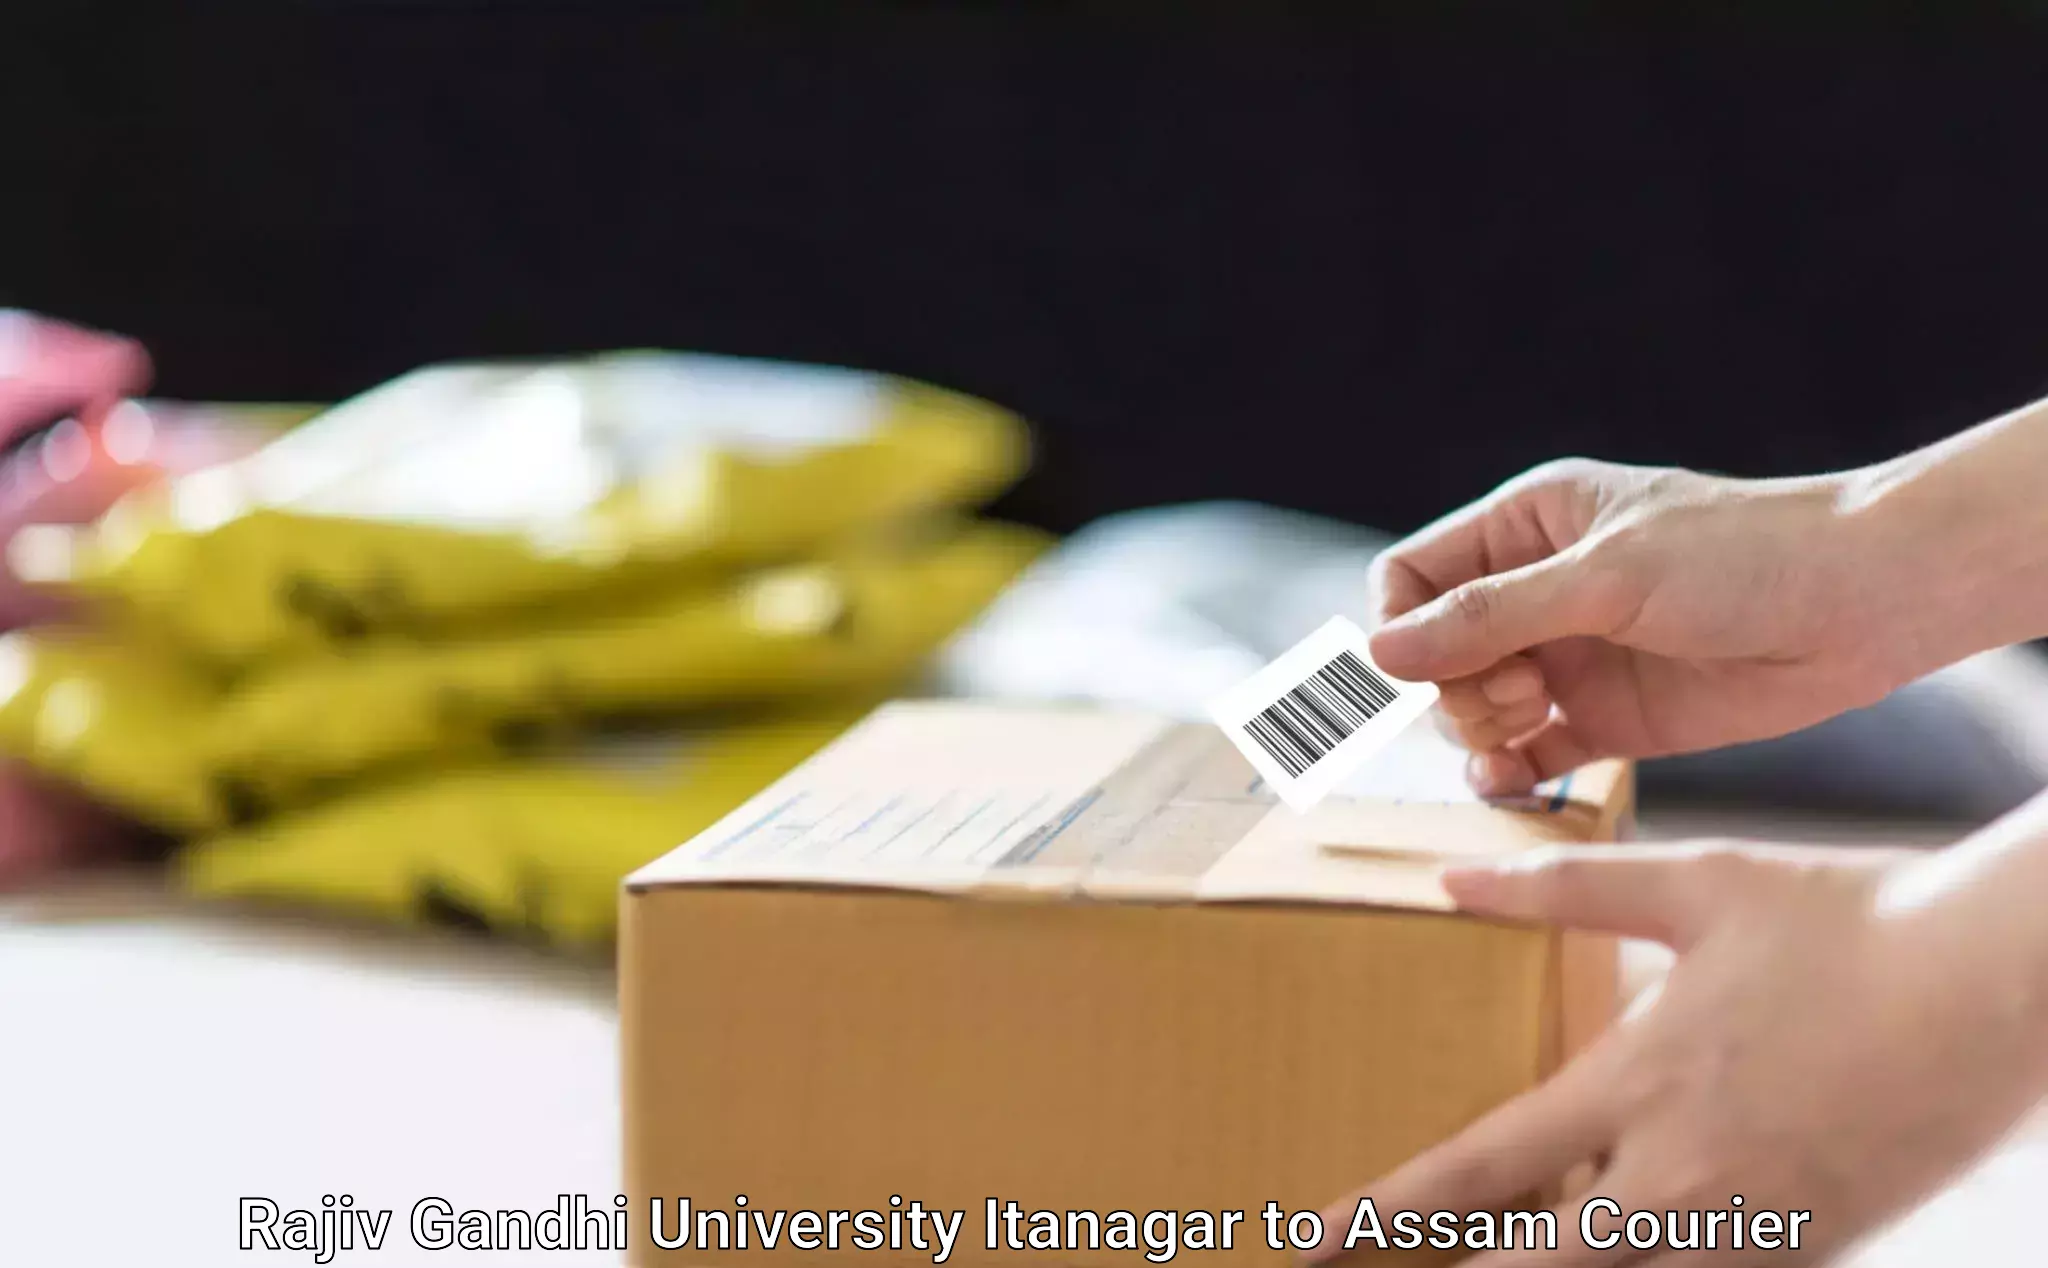 Courier service partnerships in Rajiv Gandhi University Itanagar to Paneri Kamrup